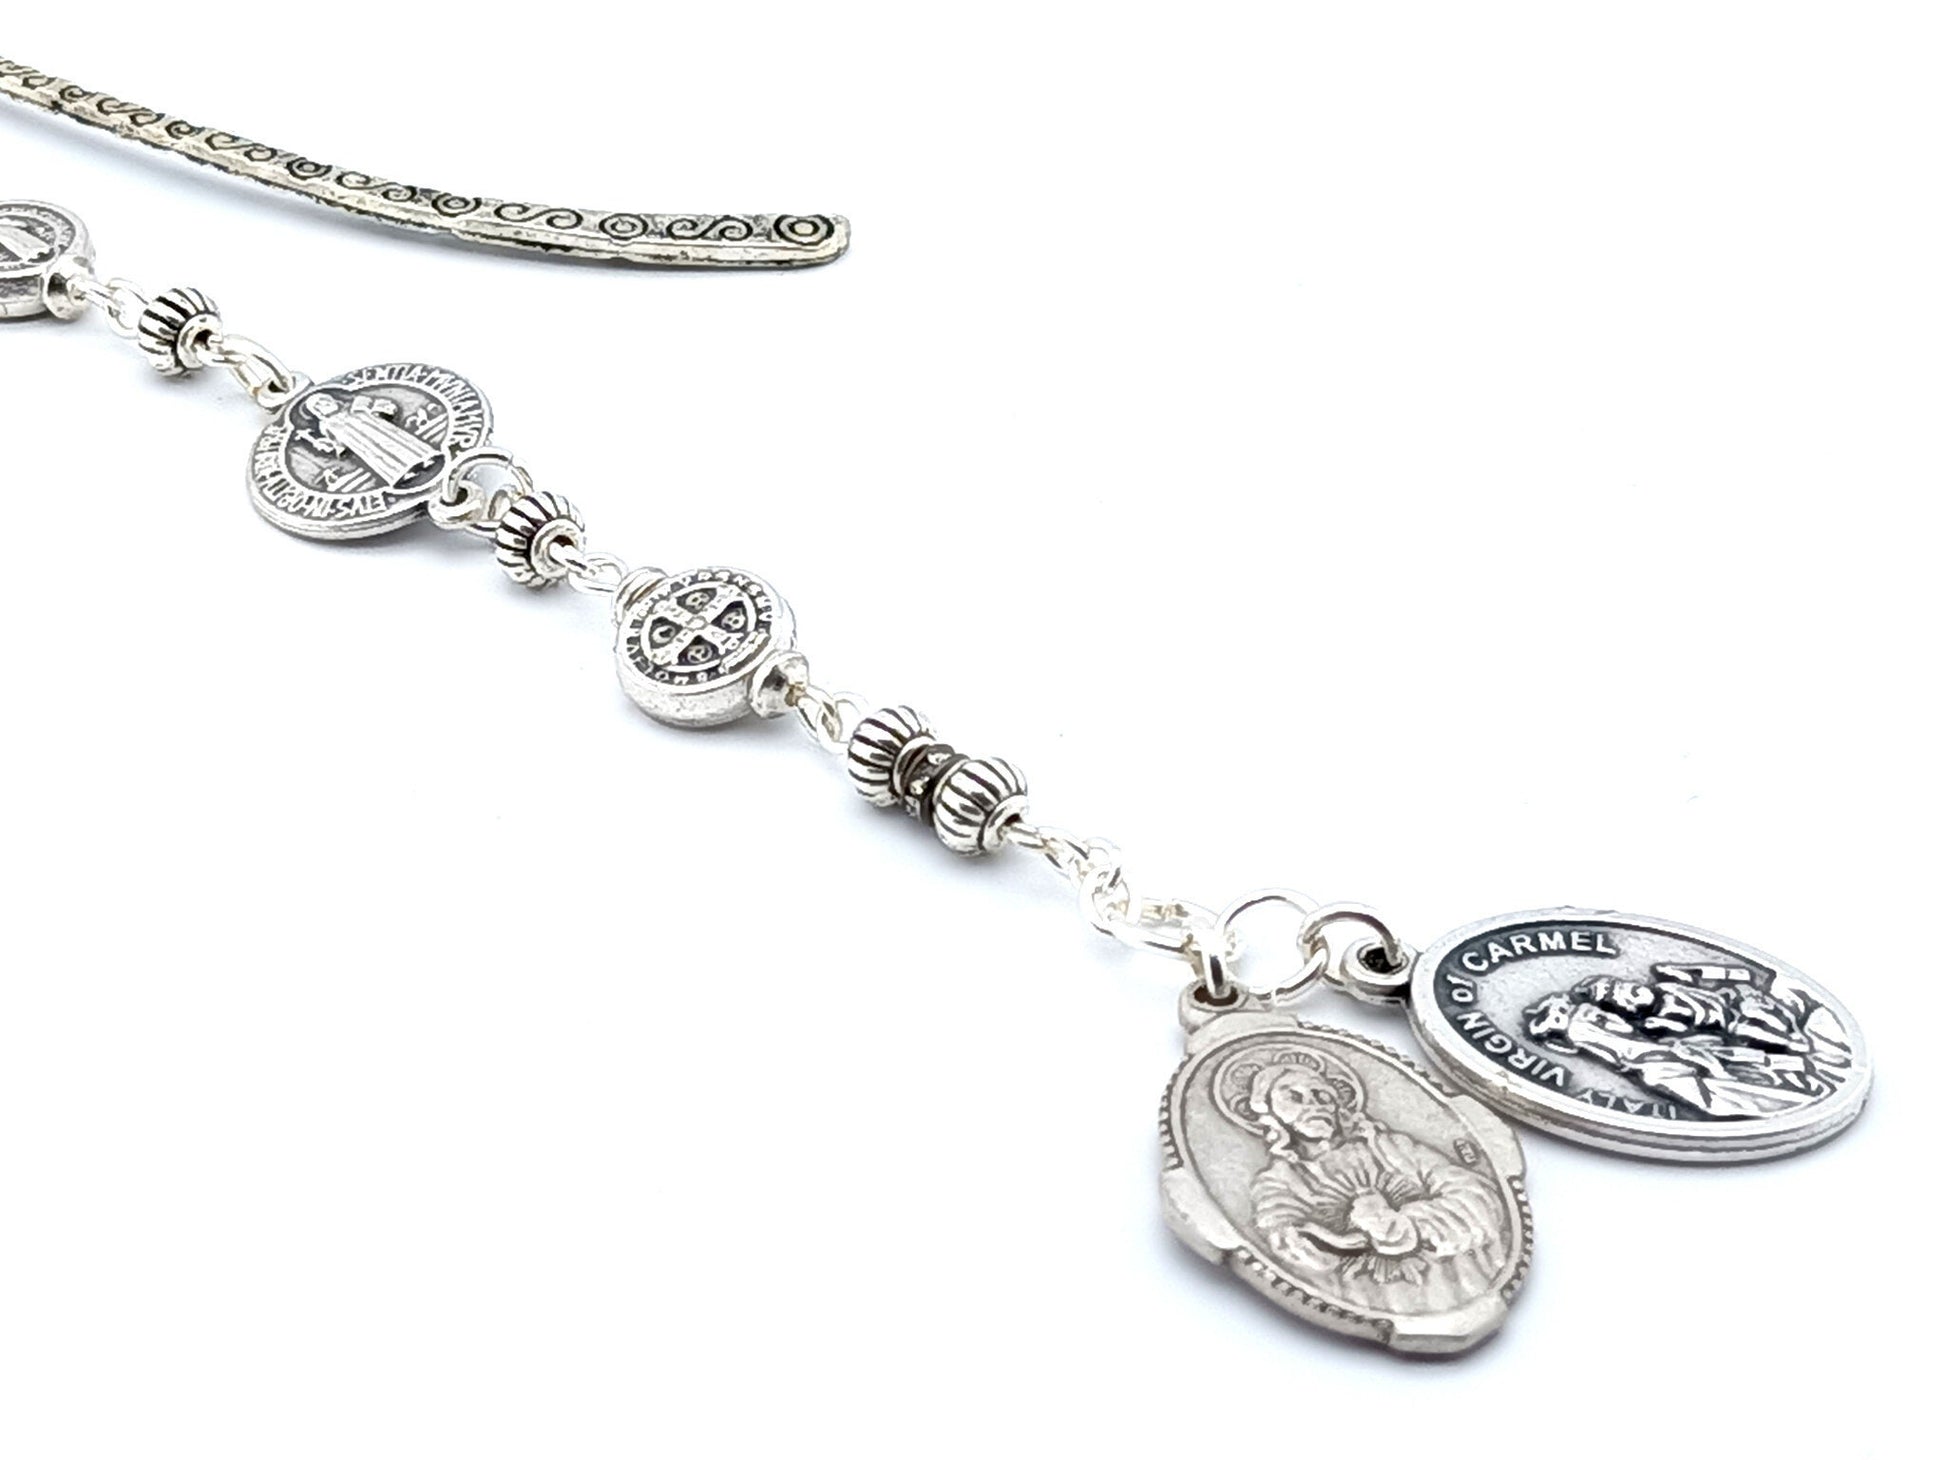 Sacred Heart unique rosary beads Catholic religious bookmark.